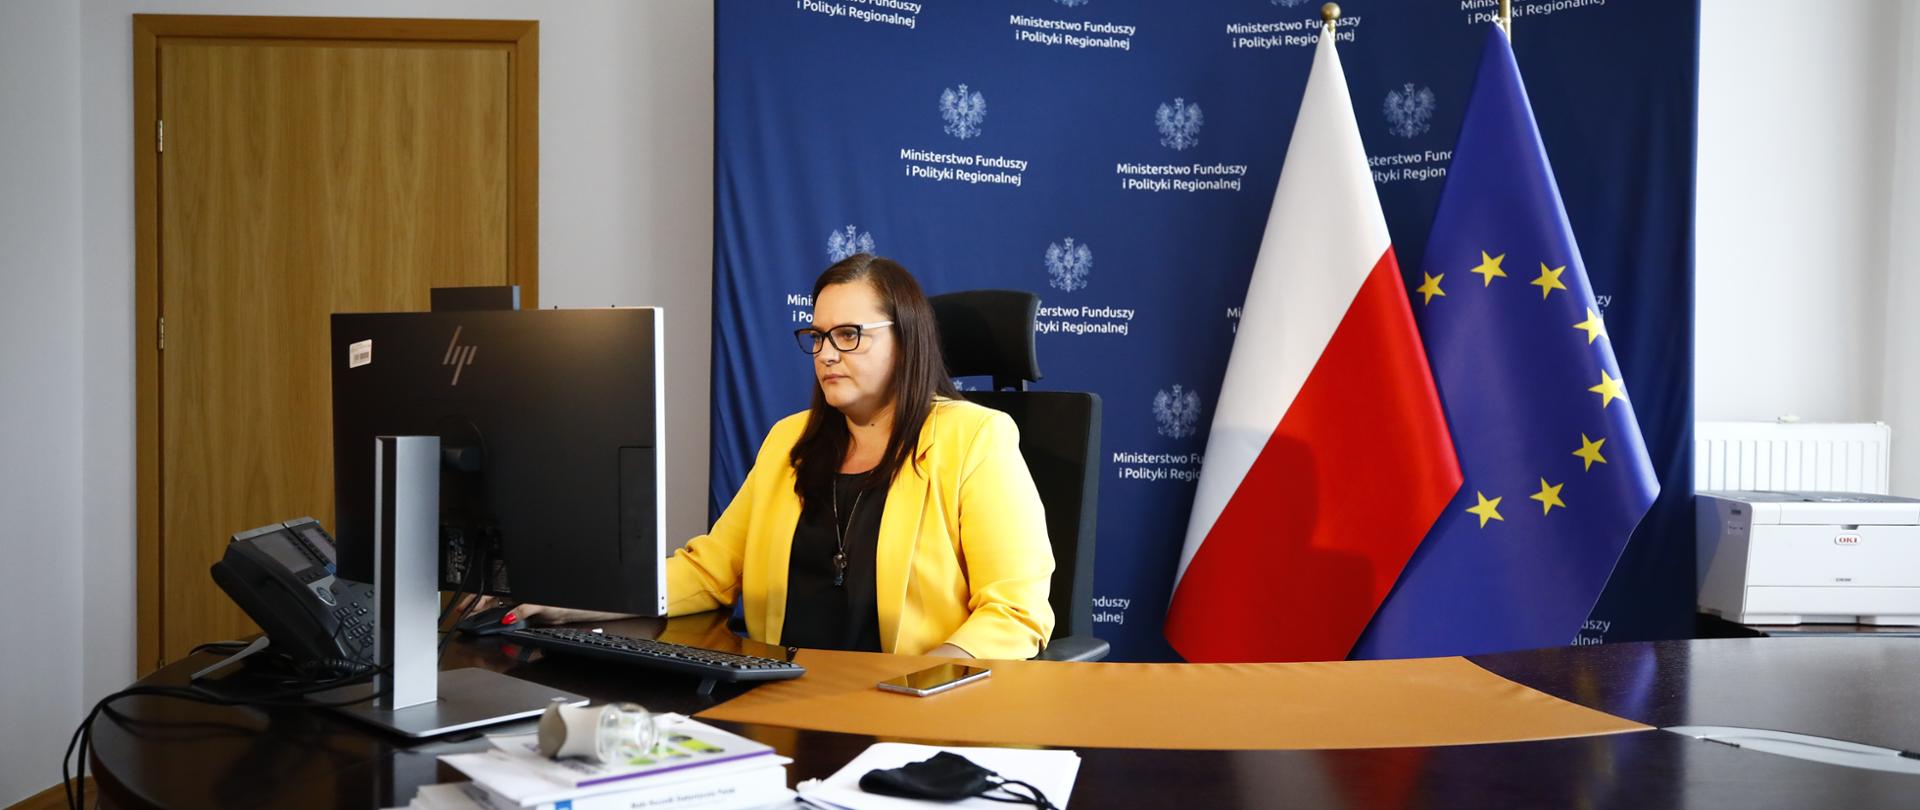 wiceminister Małgorzata Jarosińska-Jedynak uczestniczy w spotkaniu zdalnie - przed komputerem, za nią flagi Polski i Unii Europejskiej i ścianka z logotypami Ministerstwa Funduszy i Polityki Regionalnej